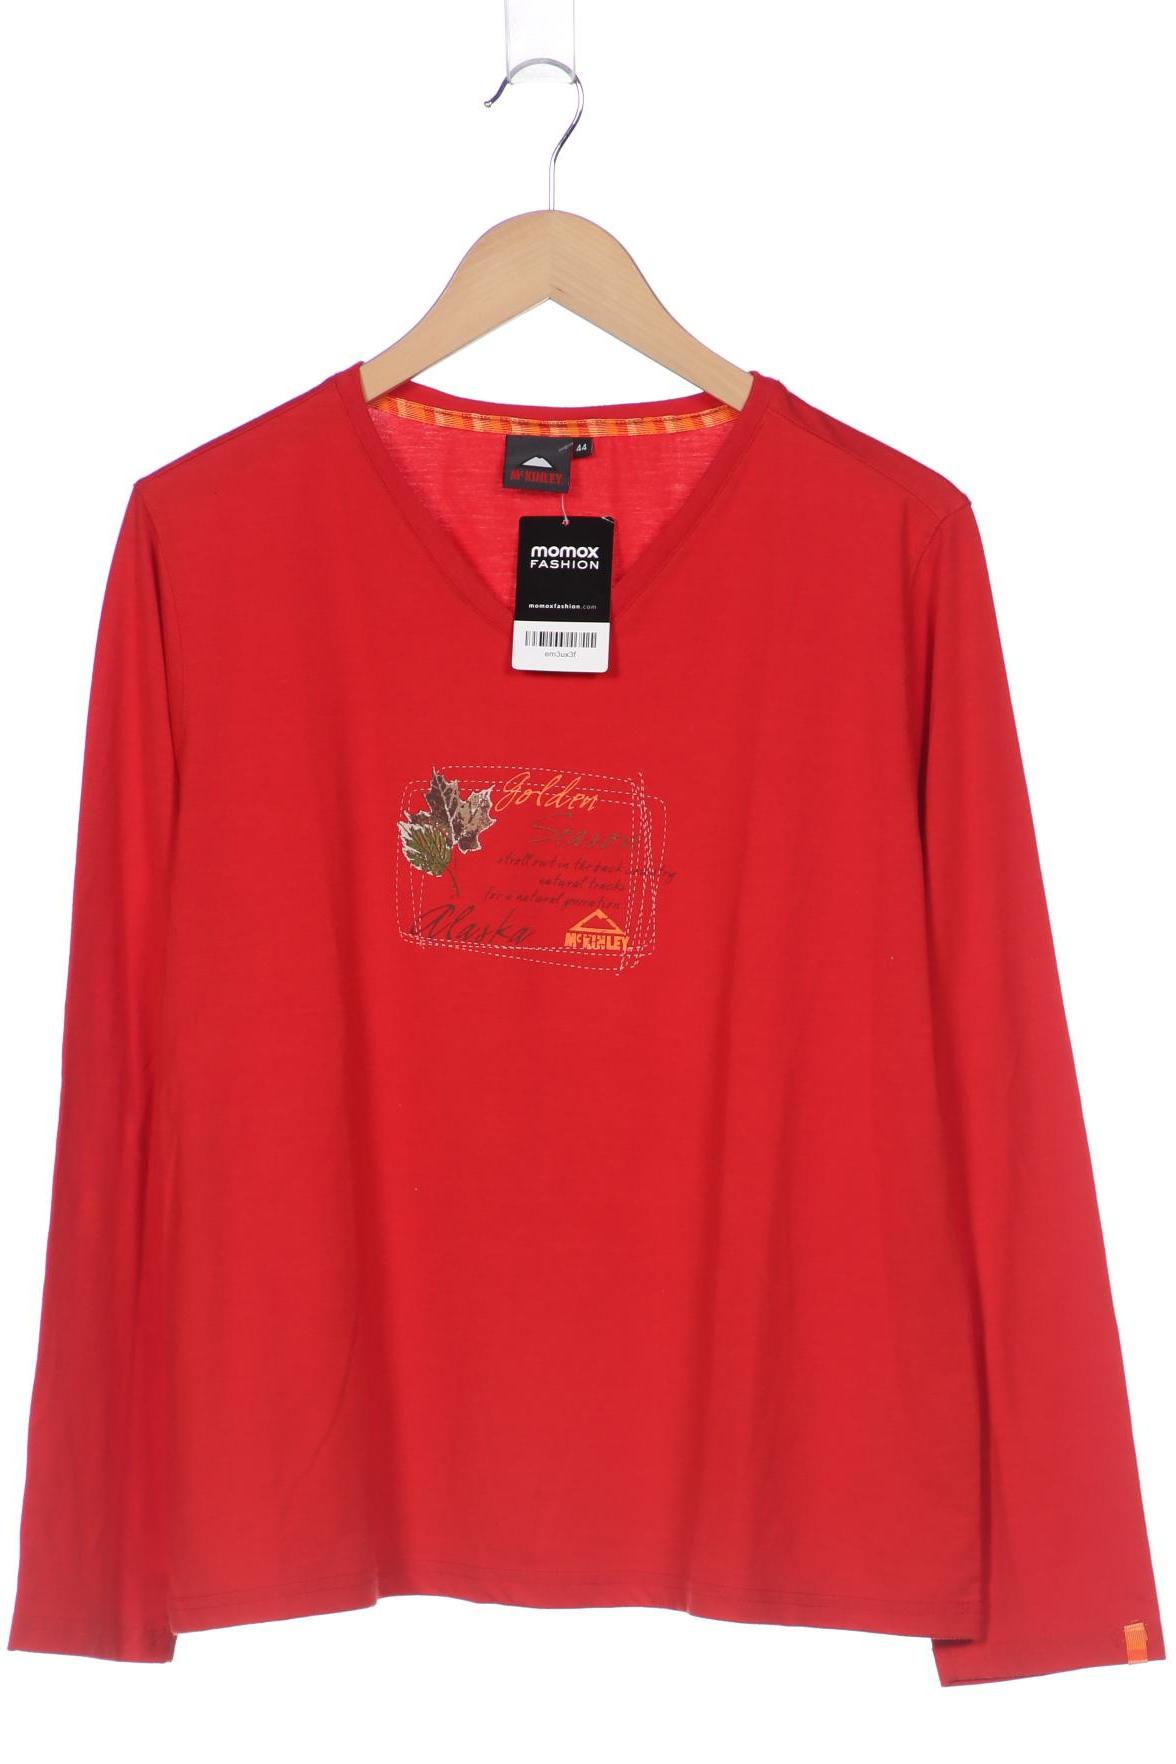 McKINLEY Damen Langarmshirt, rot, Gr. 44 von mckinley